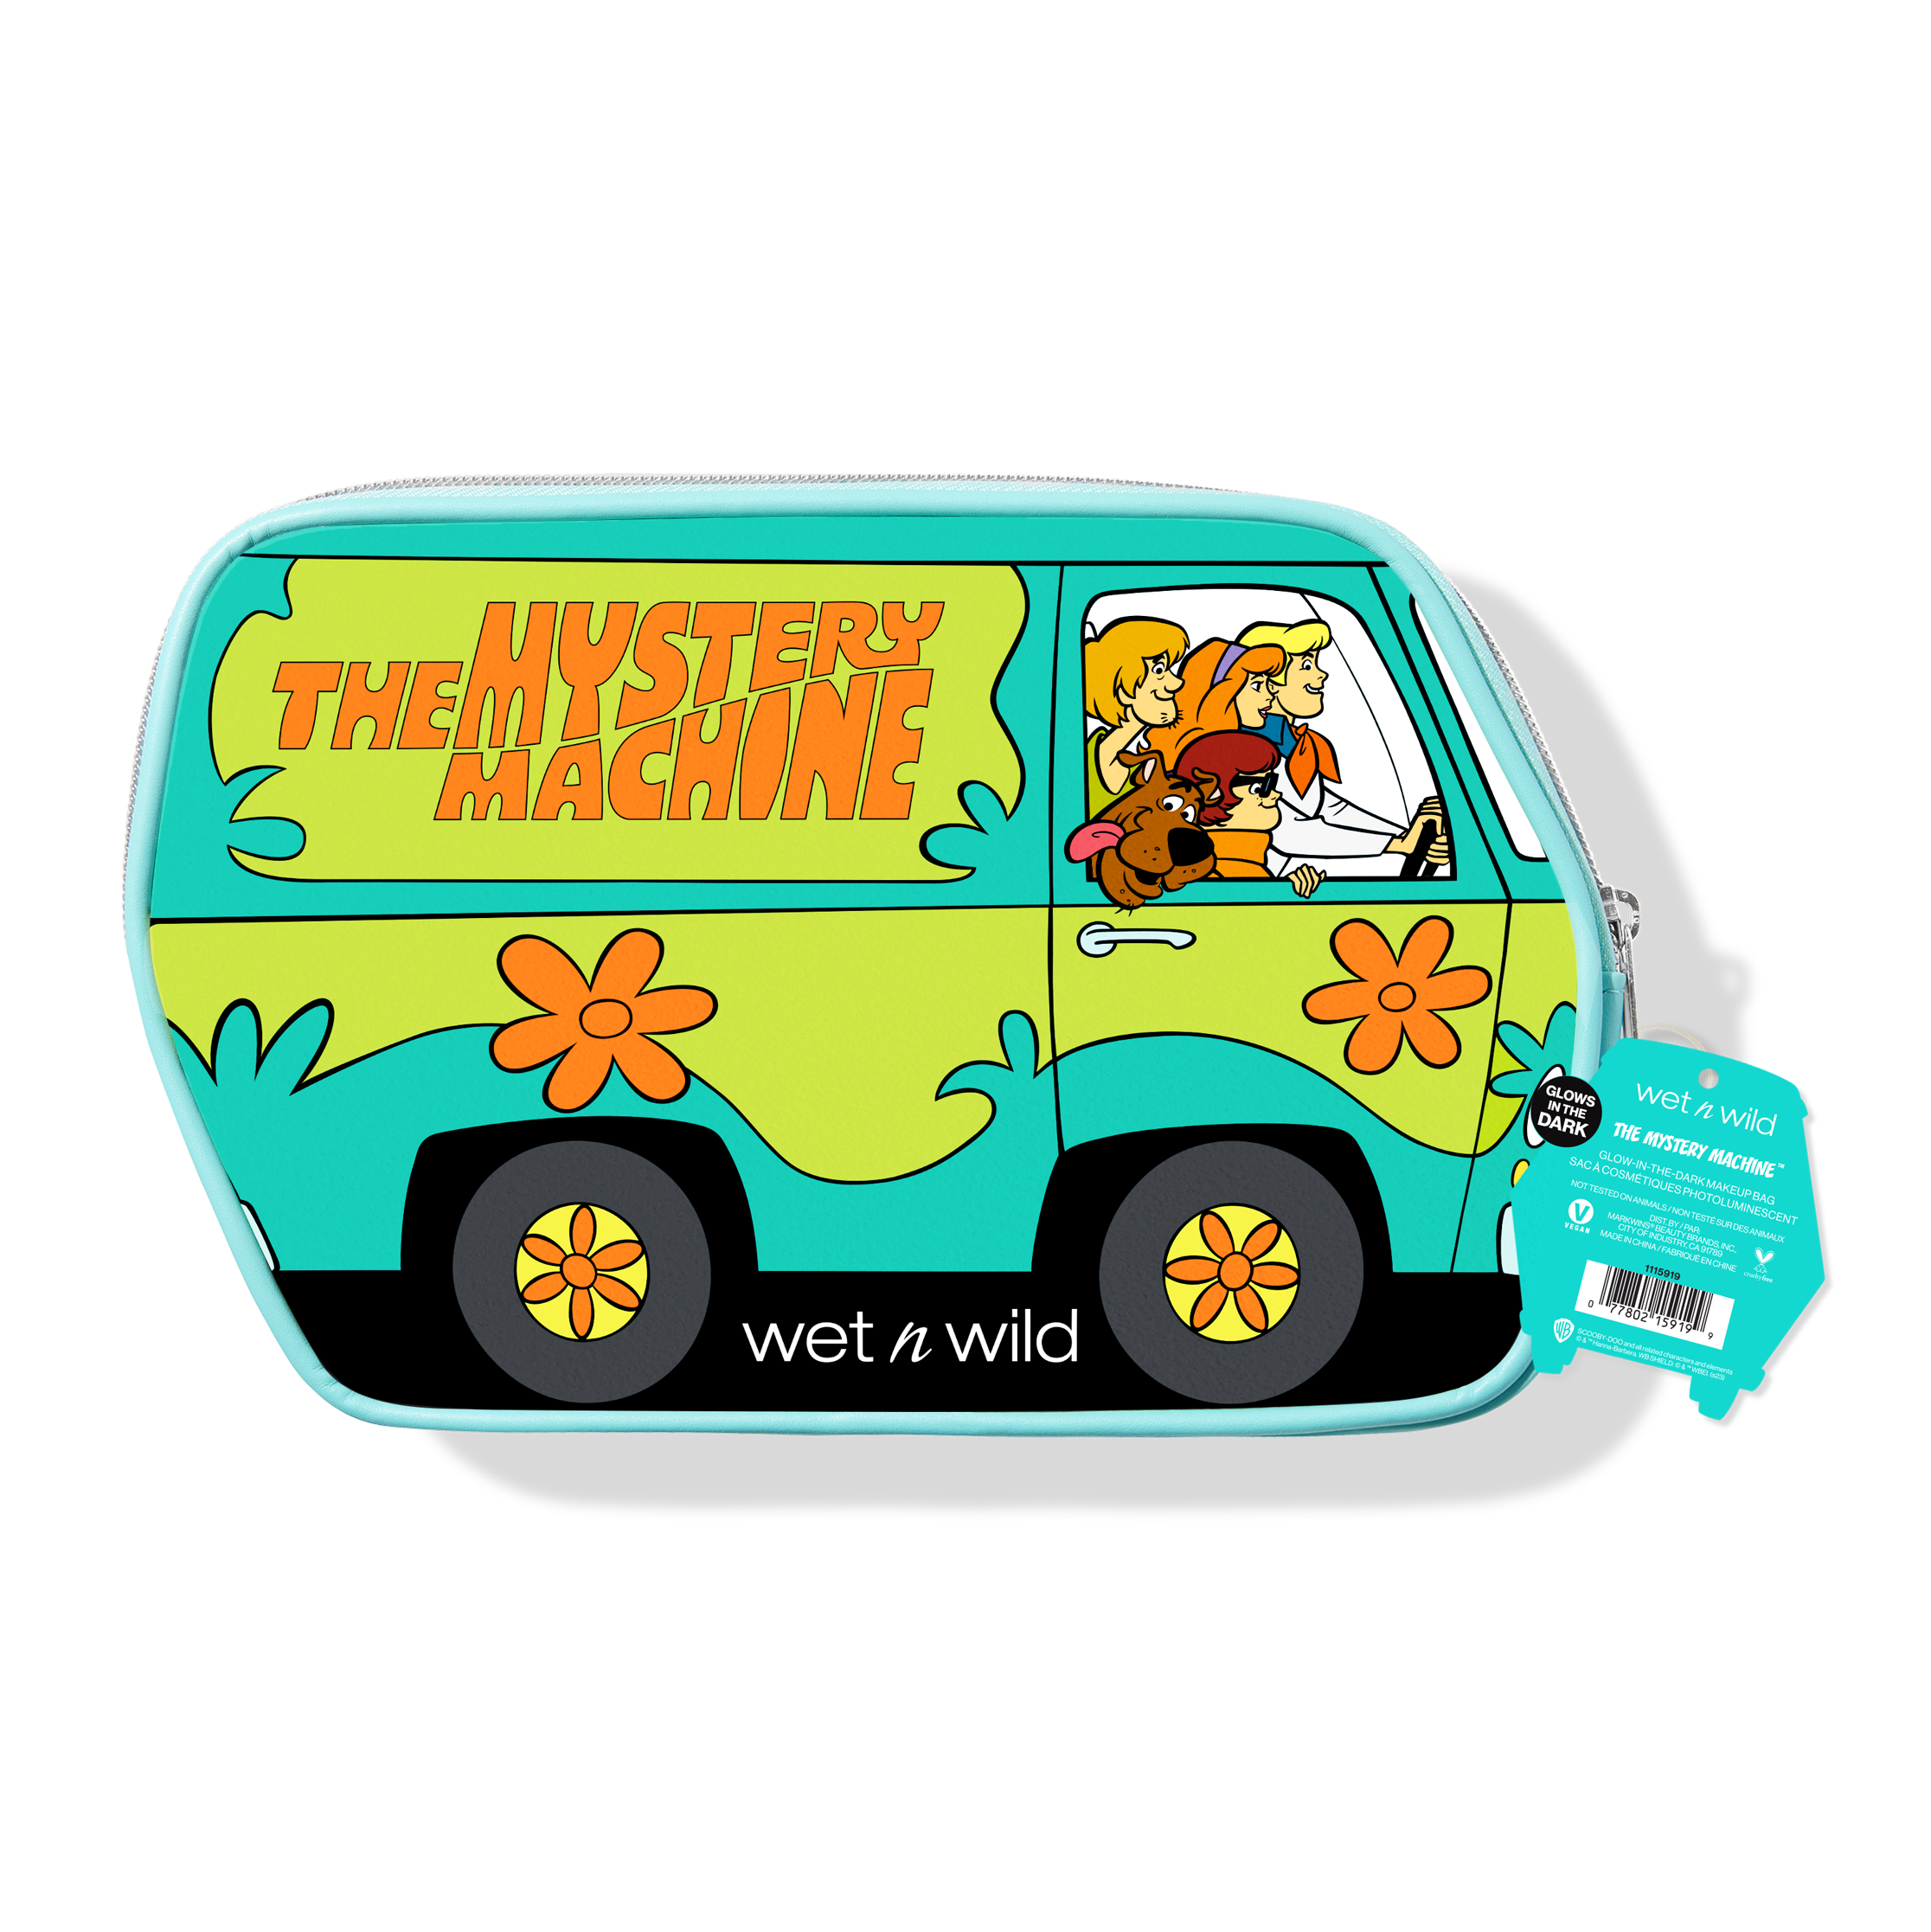 The Mystery Machine Van